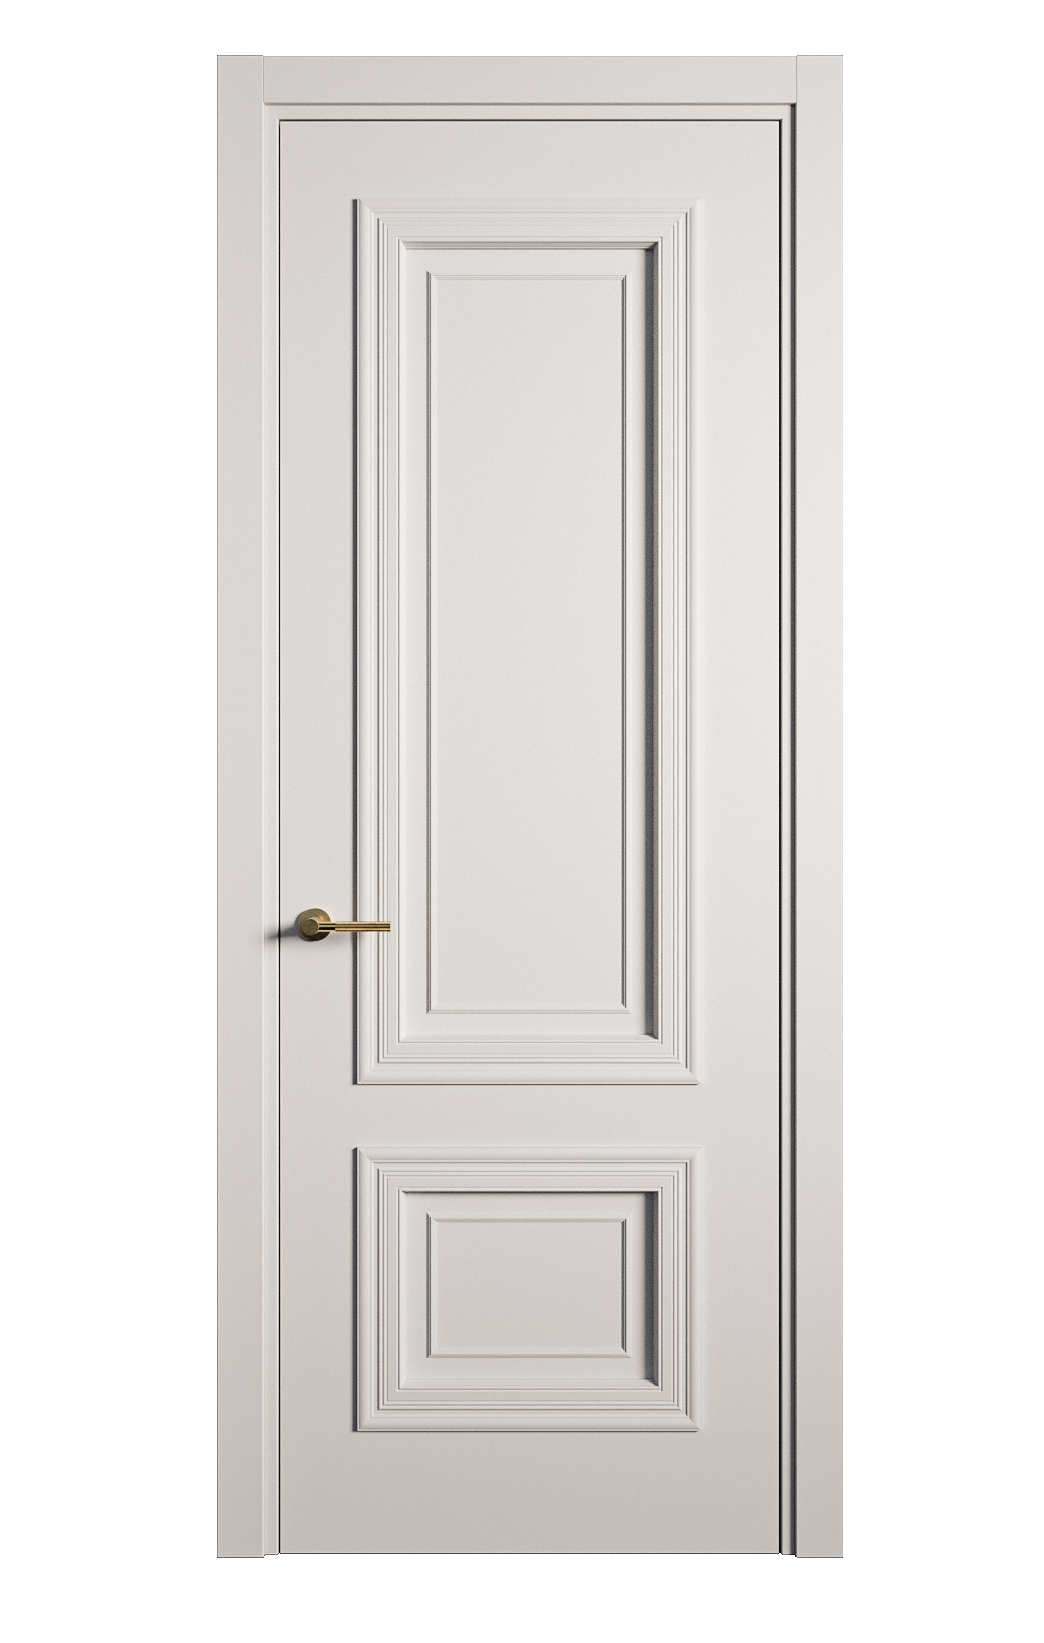 Межкомнатная дверь Мальта-1 глухая эмаль ral 7047 21852